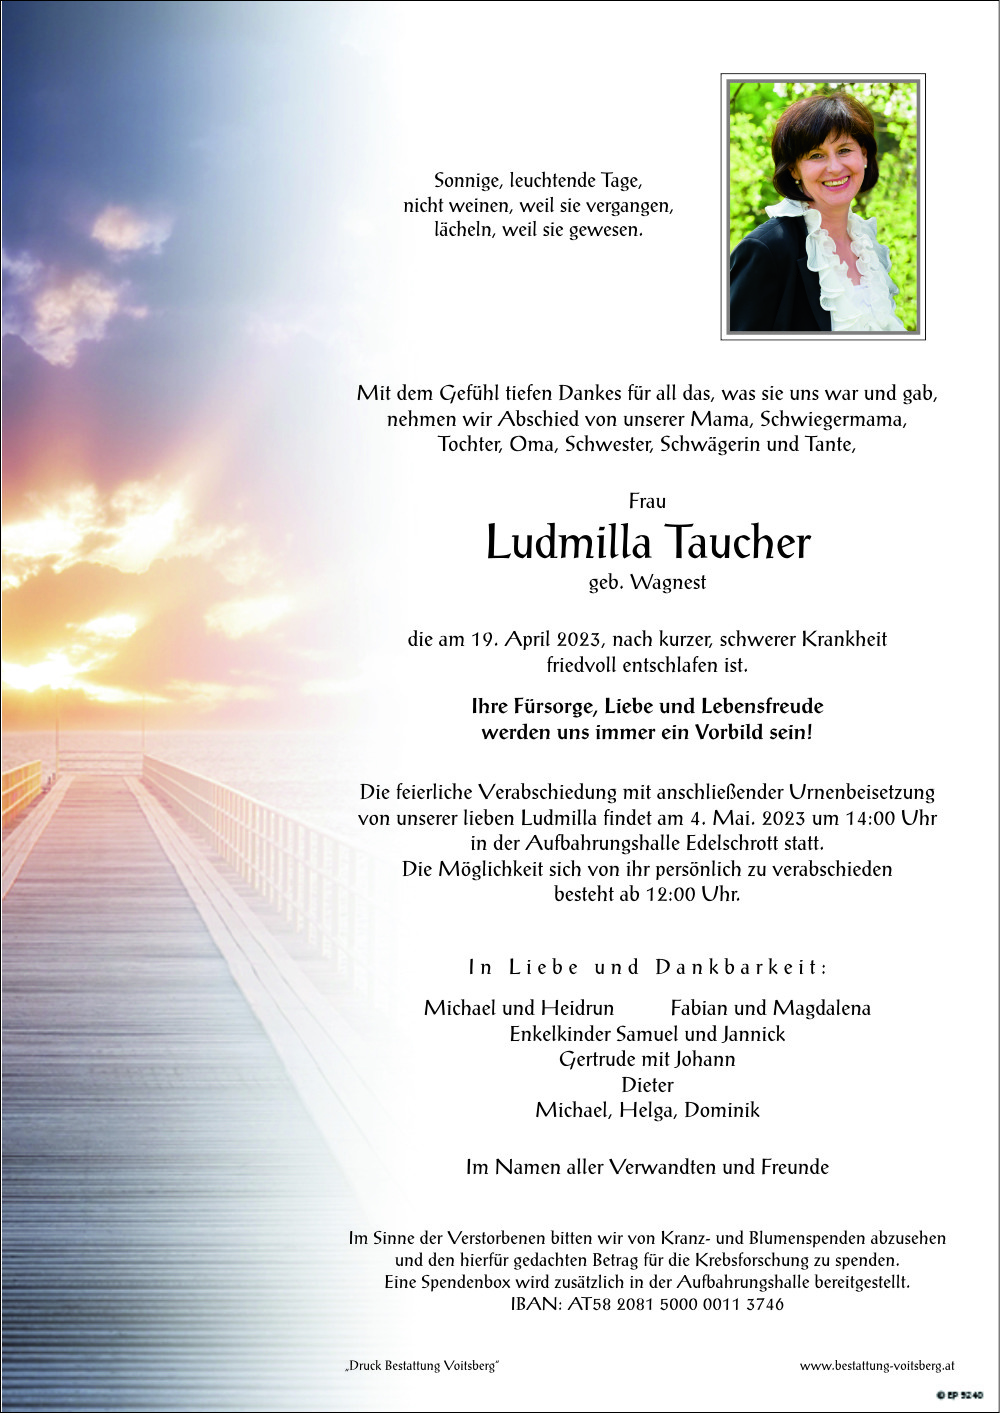 Ludmilla Taucher